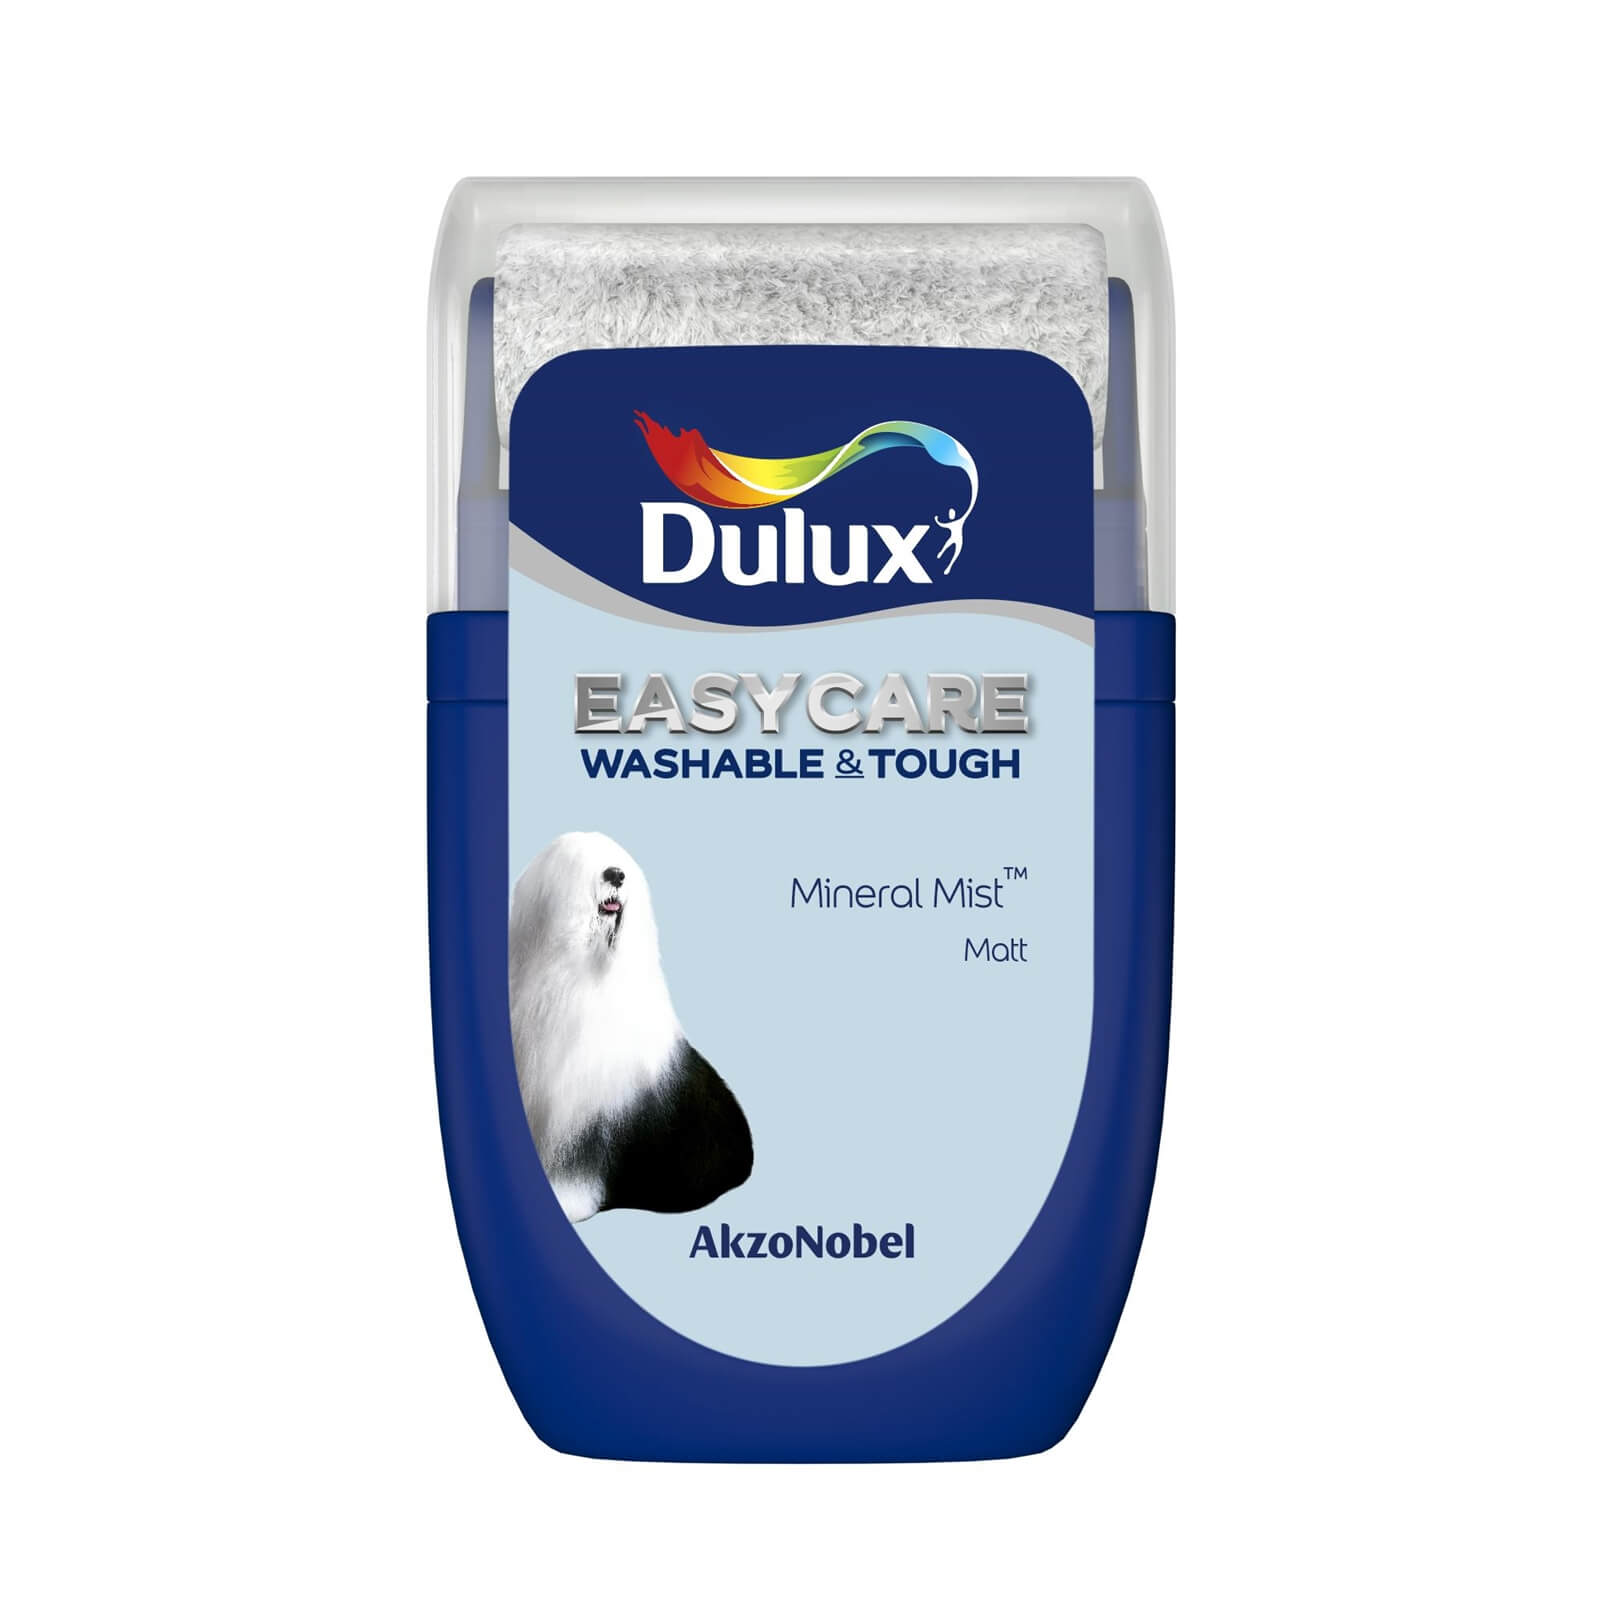 Dulux Easycare Washable & Tough Matt Paint Mineral Mist - Tester 30ml